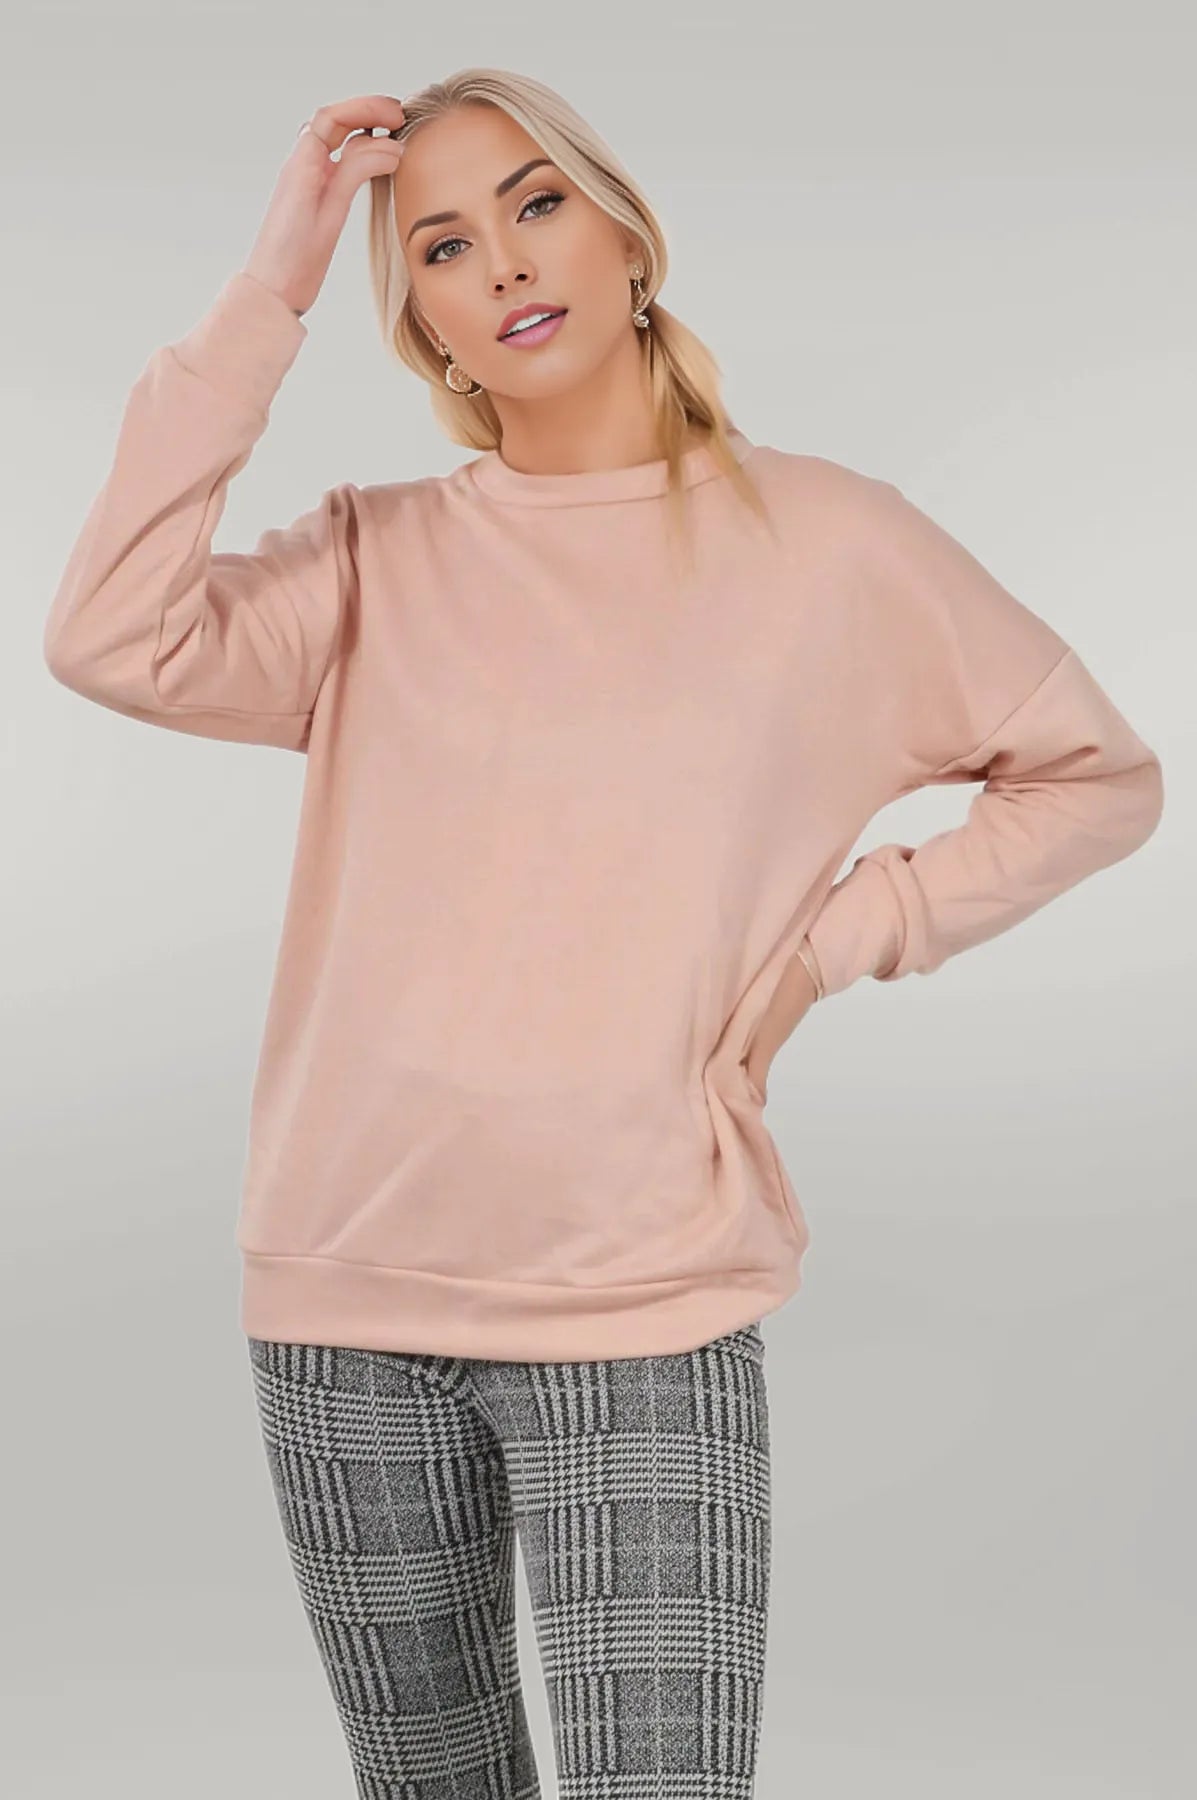 Roman Originals Sweatshirt Lounge Top Pale Pink / S